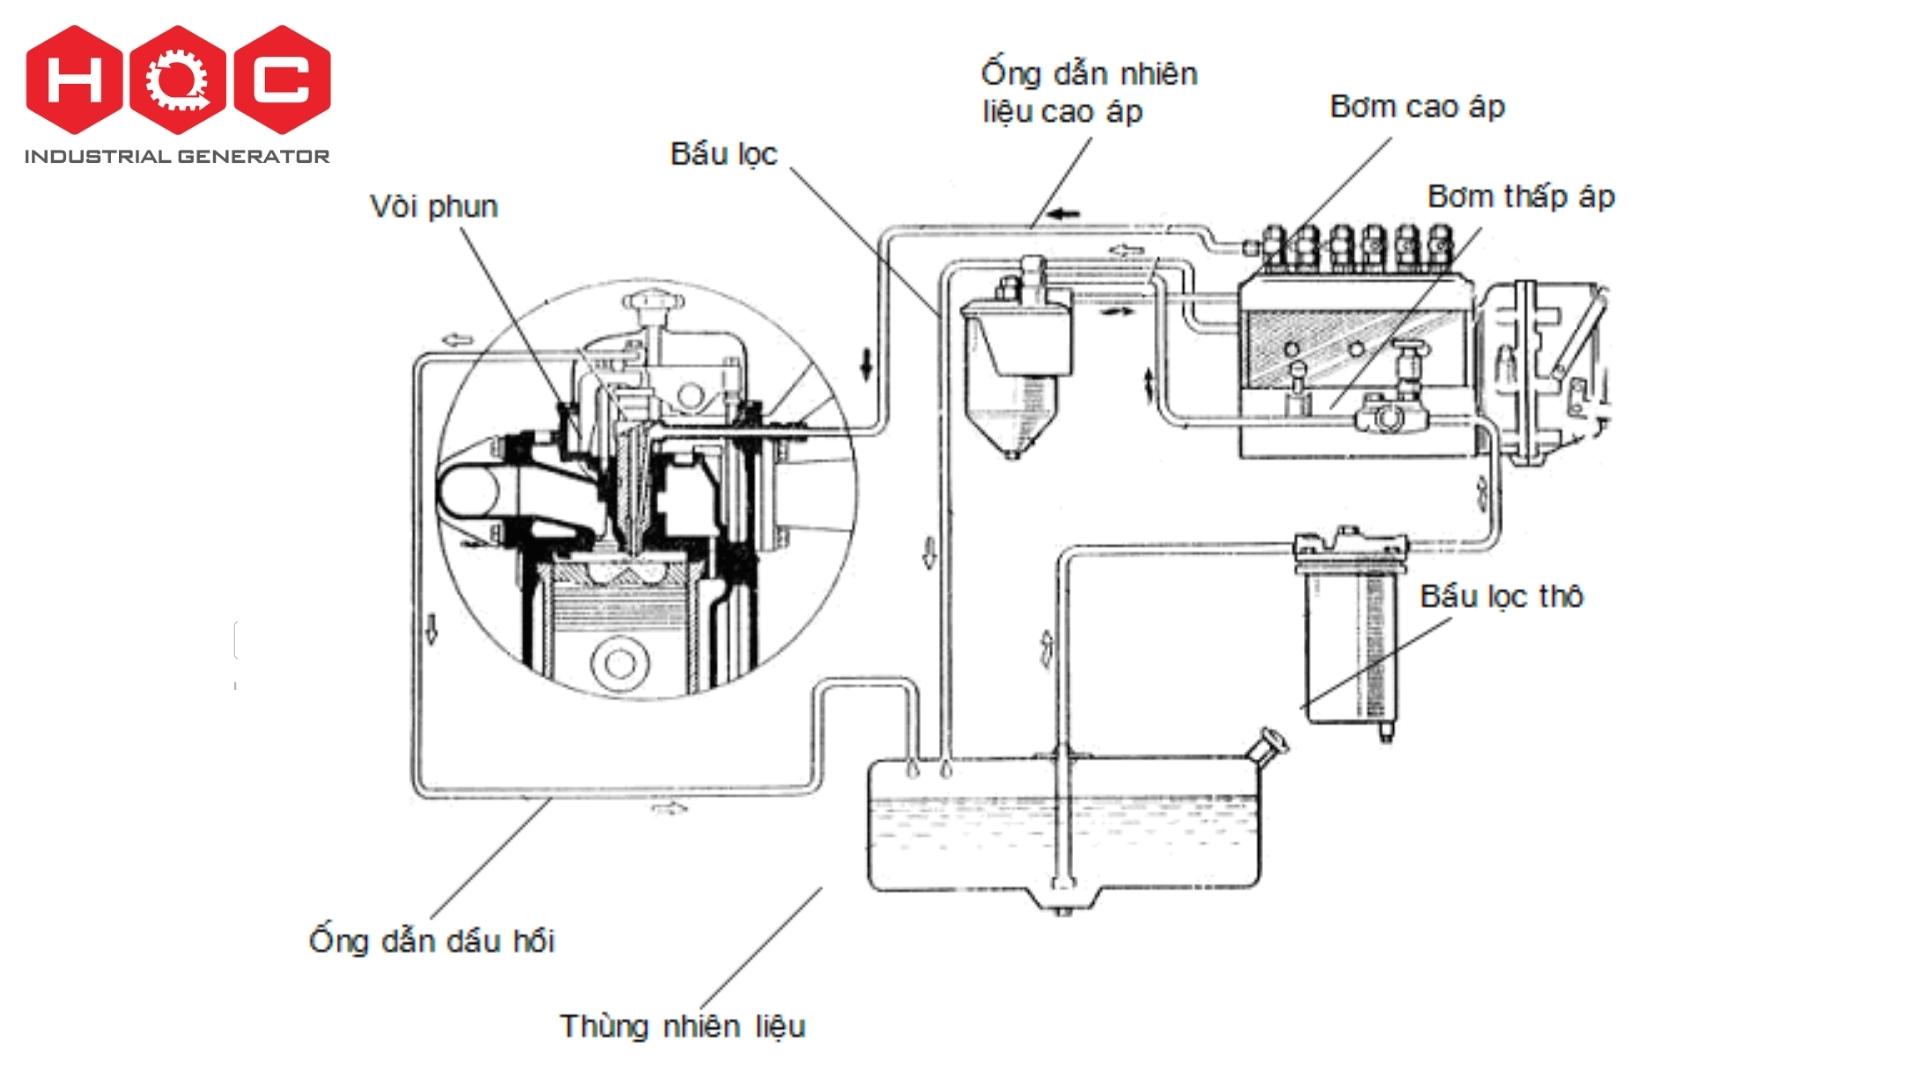 Thành phần cấu tạo cơ bản của động cơ diesel cho máy phát điện